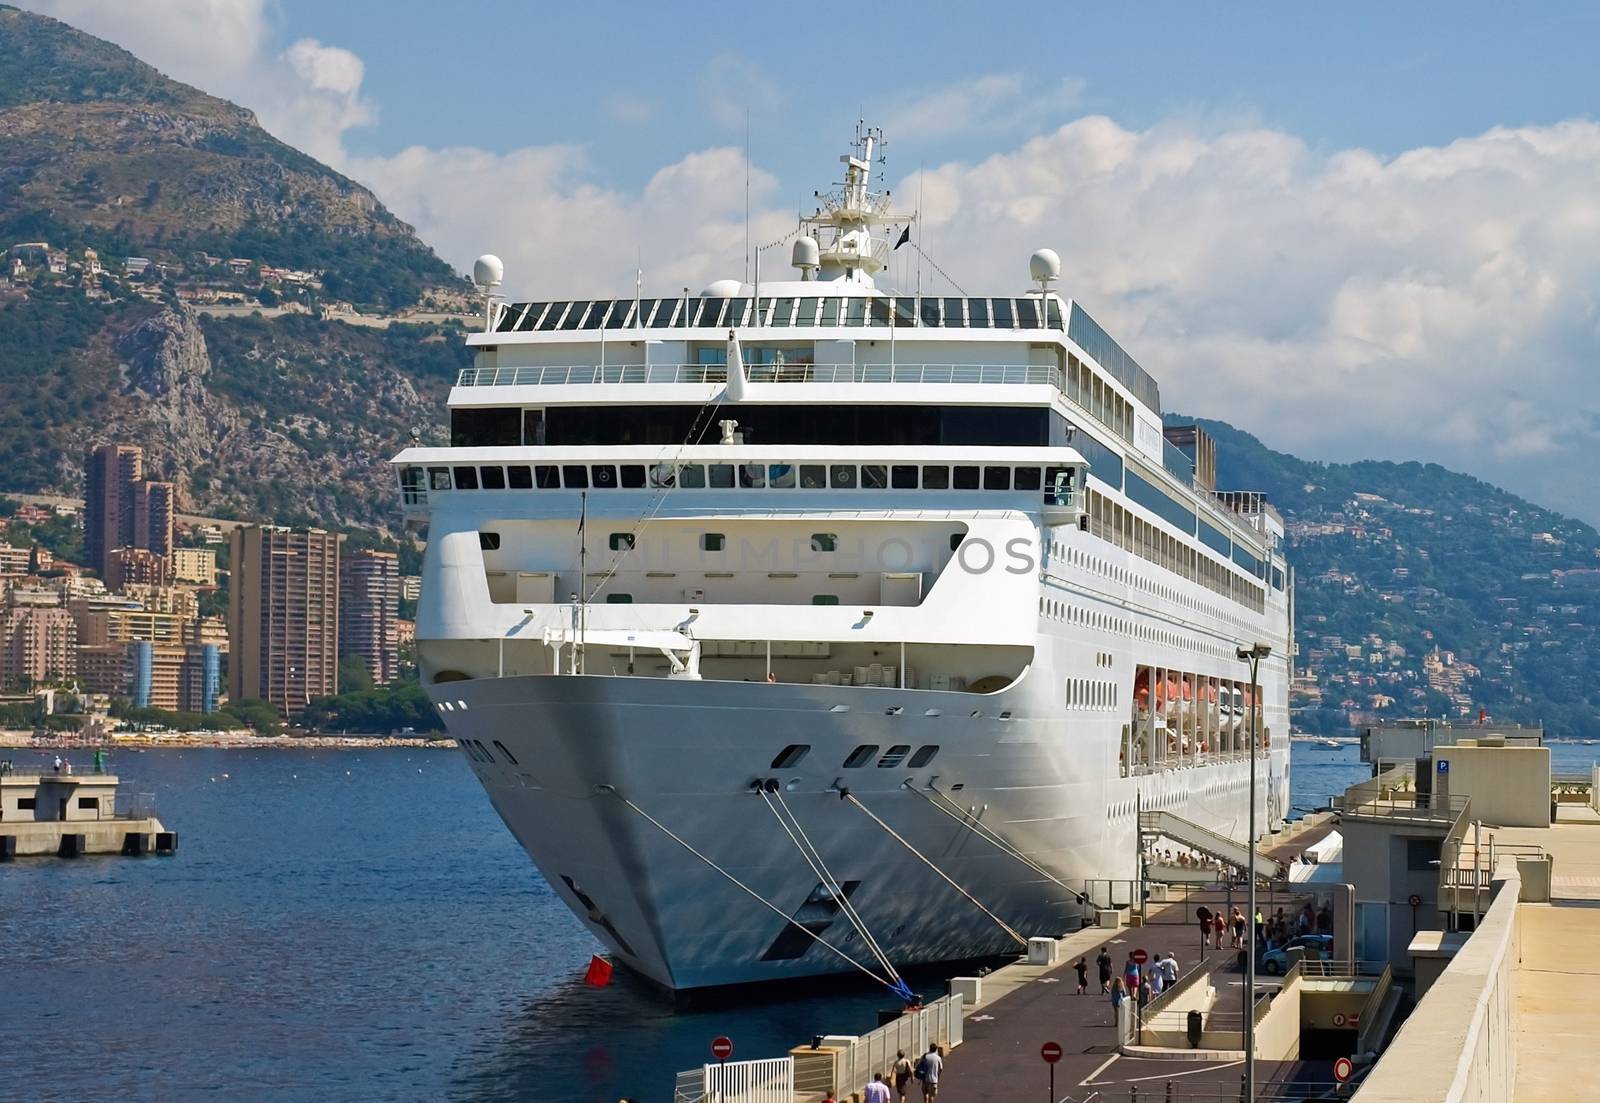 Luxury cruise ship in sea port of Monte-Carlo, Monaco.